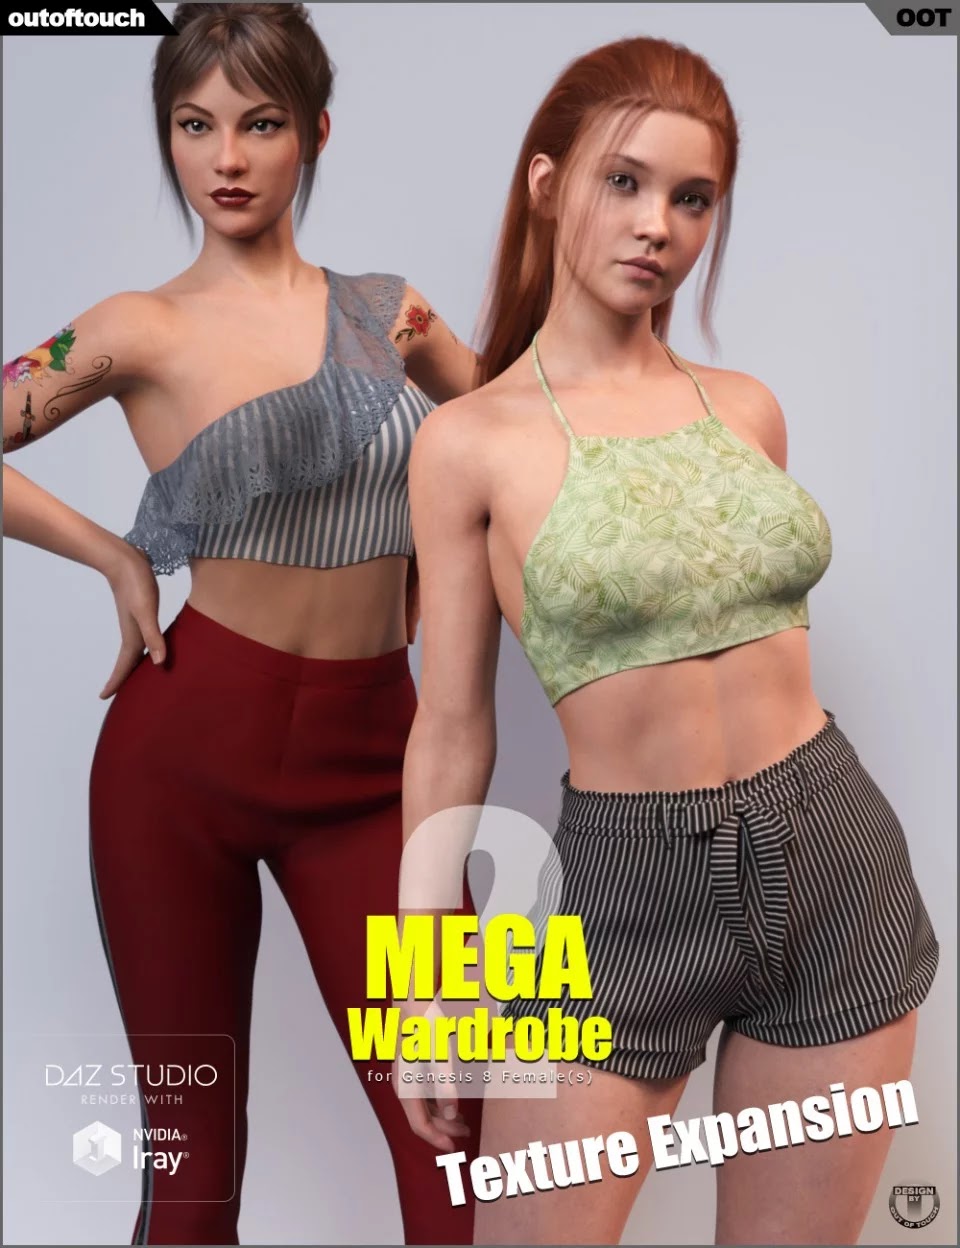 Texture Expansion for MEGA Wardrobe 2_DAZ3DDL